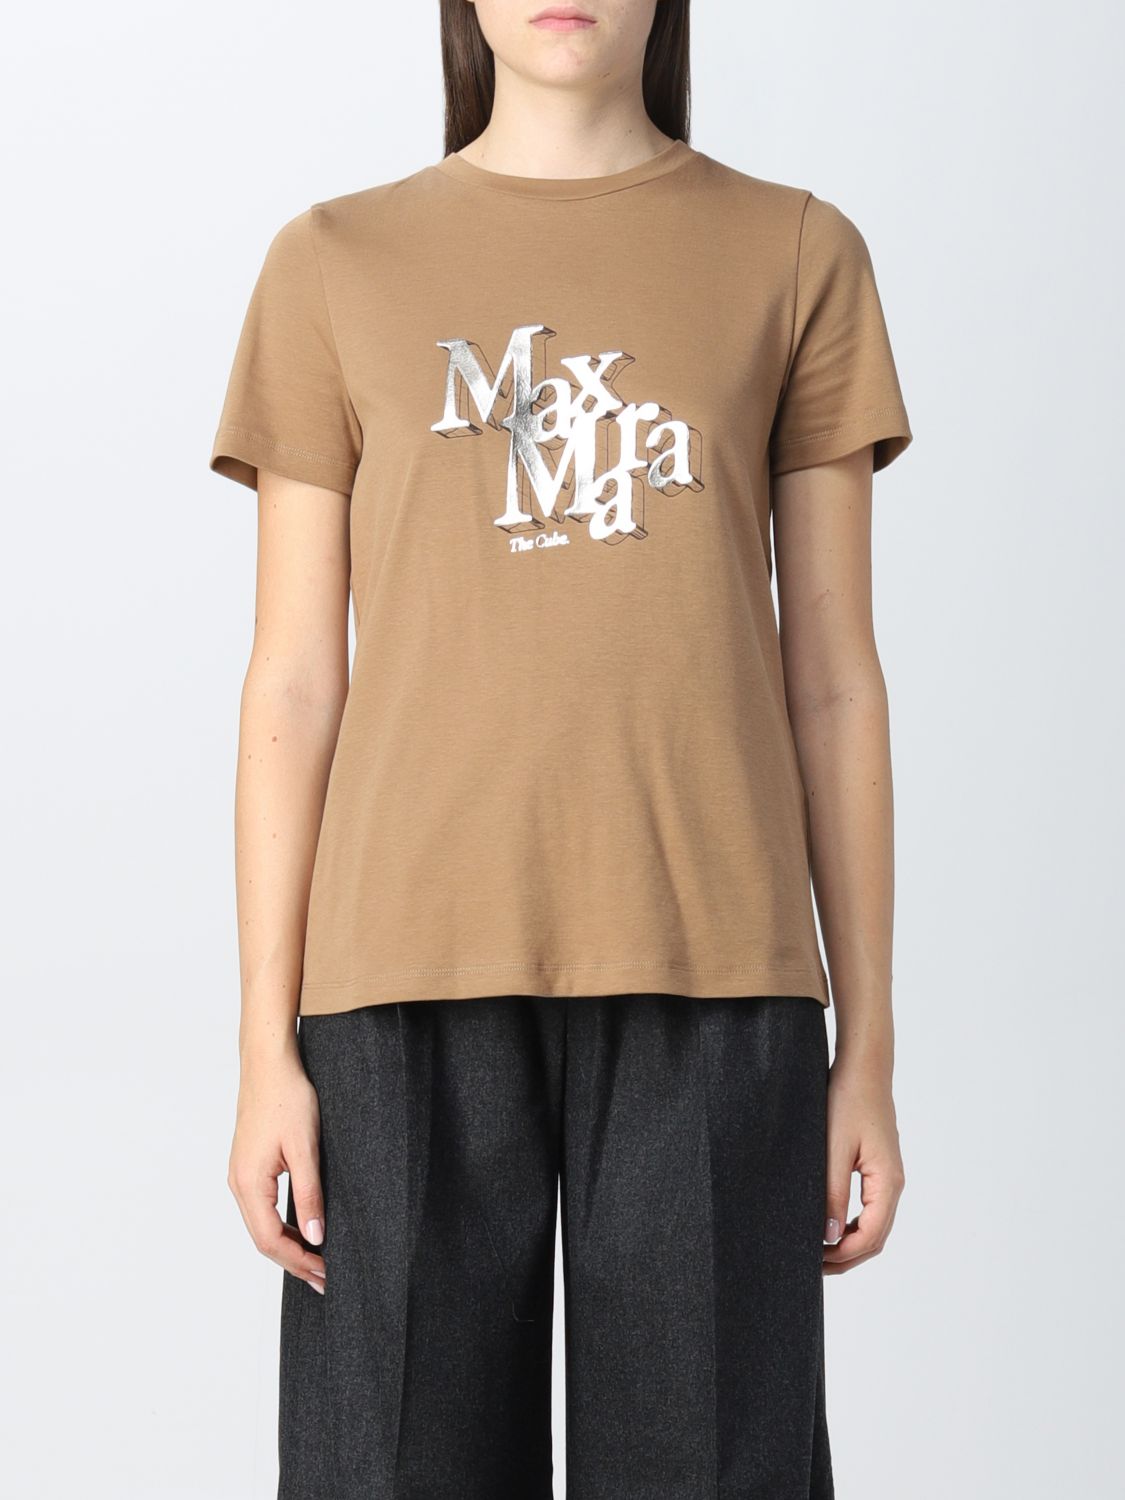 티셔츠 S 막스 마라: 티셔츠 S Max Mara 여성 카멜 1